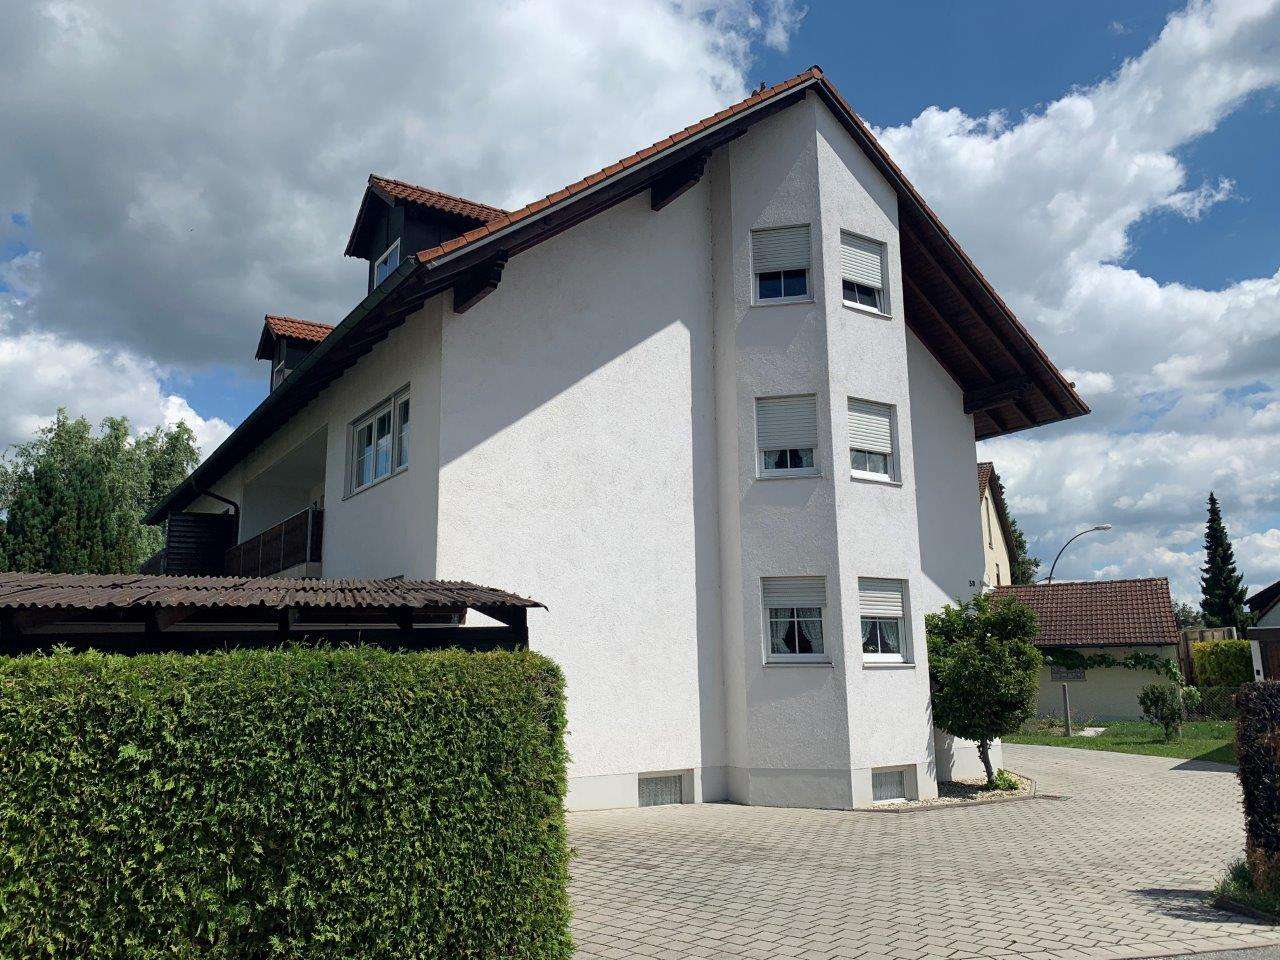 37 neu Vorrat Wohnung Mieten Landshut  Wohnung mieten in Landshut  